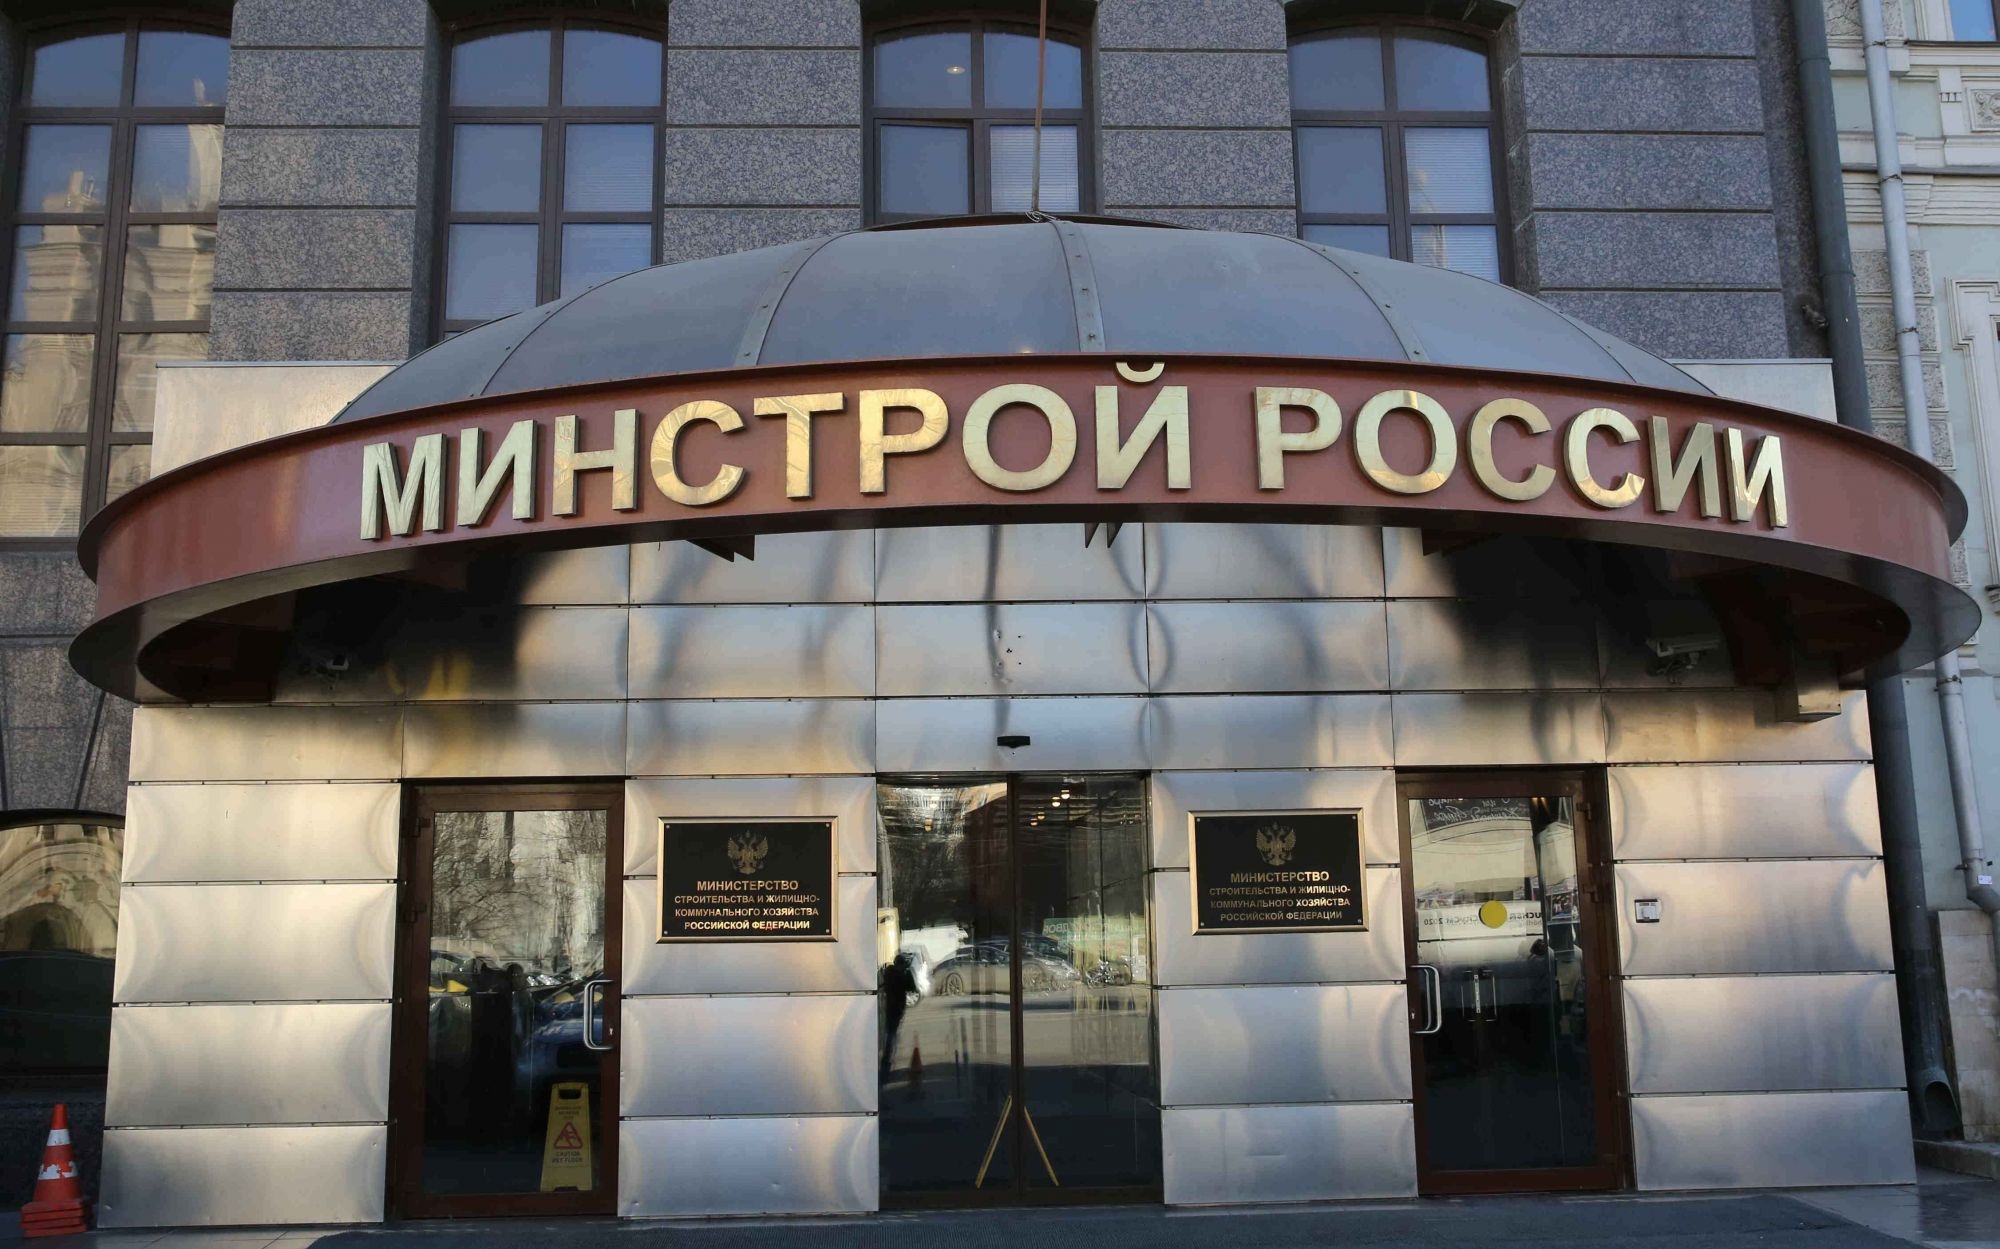 Приказ Минстроя России о типовом госконтракте зарегистрирован Минюстом